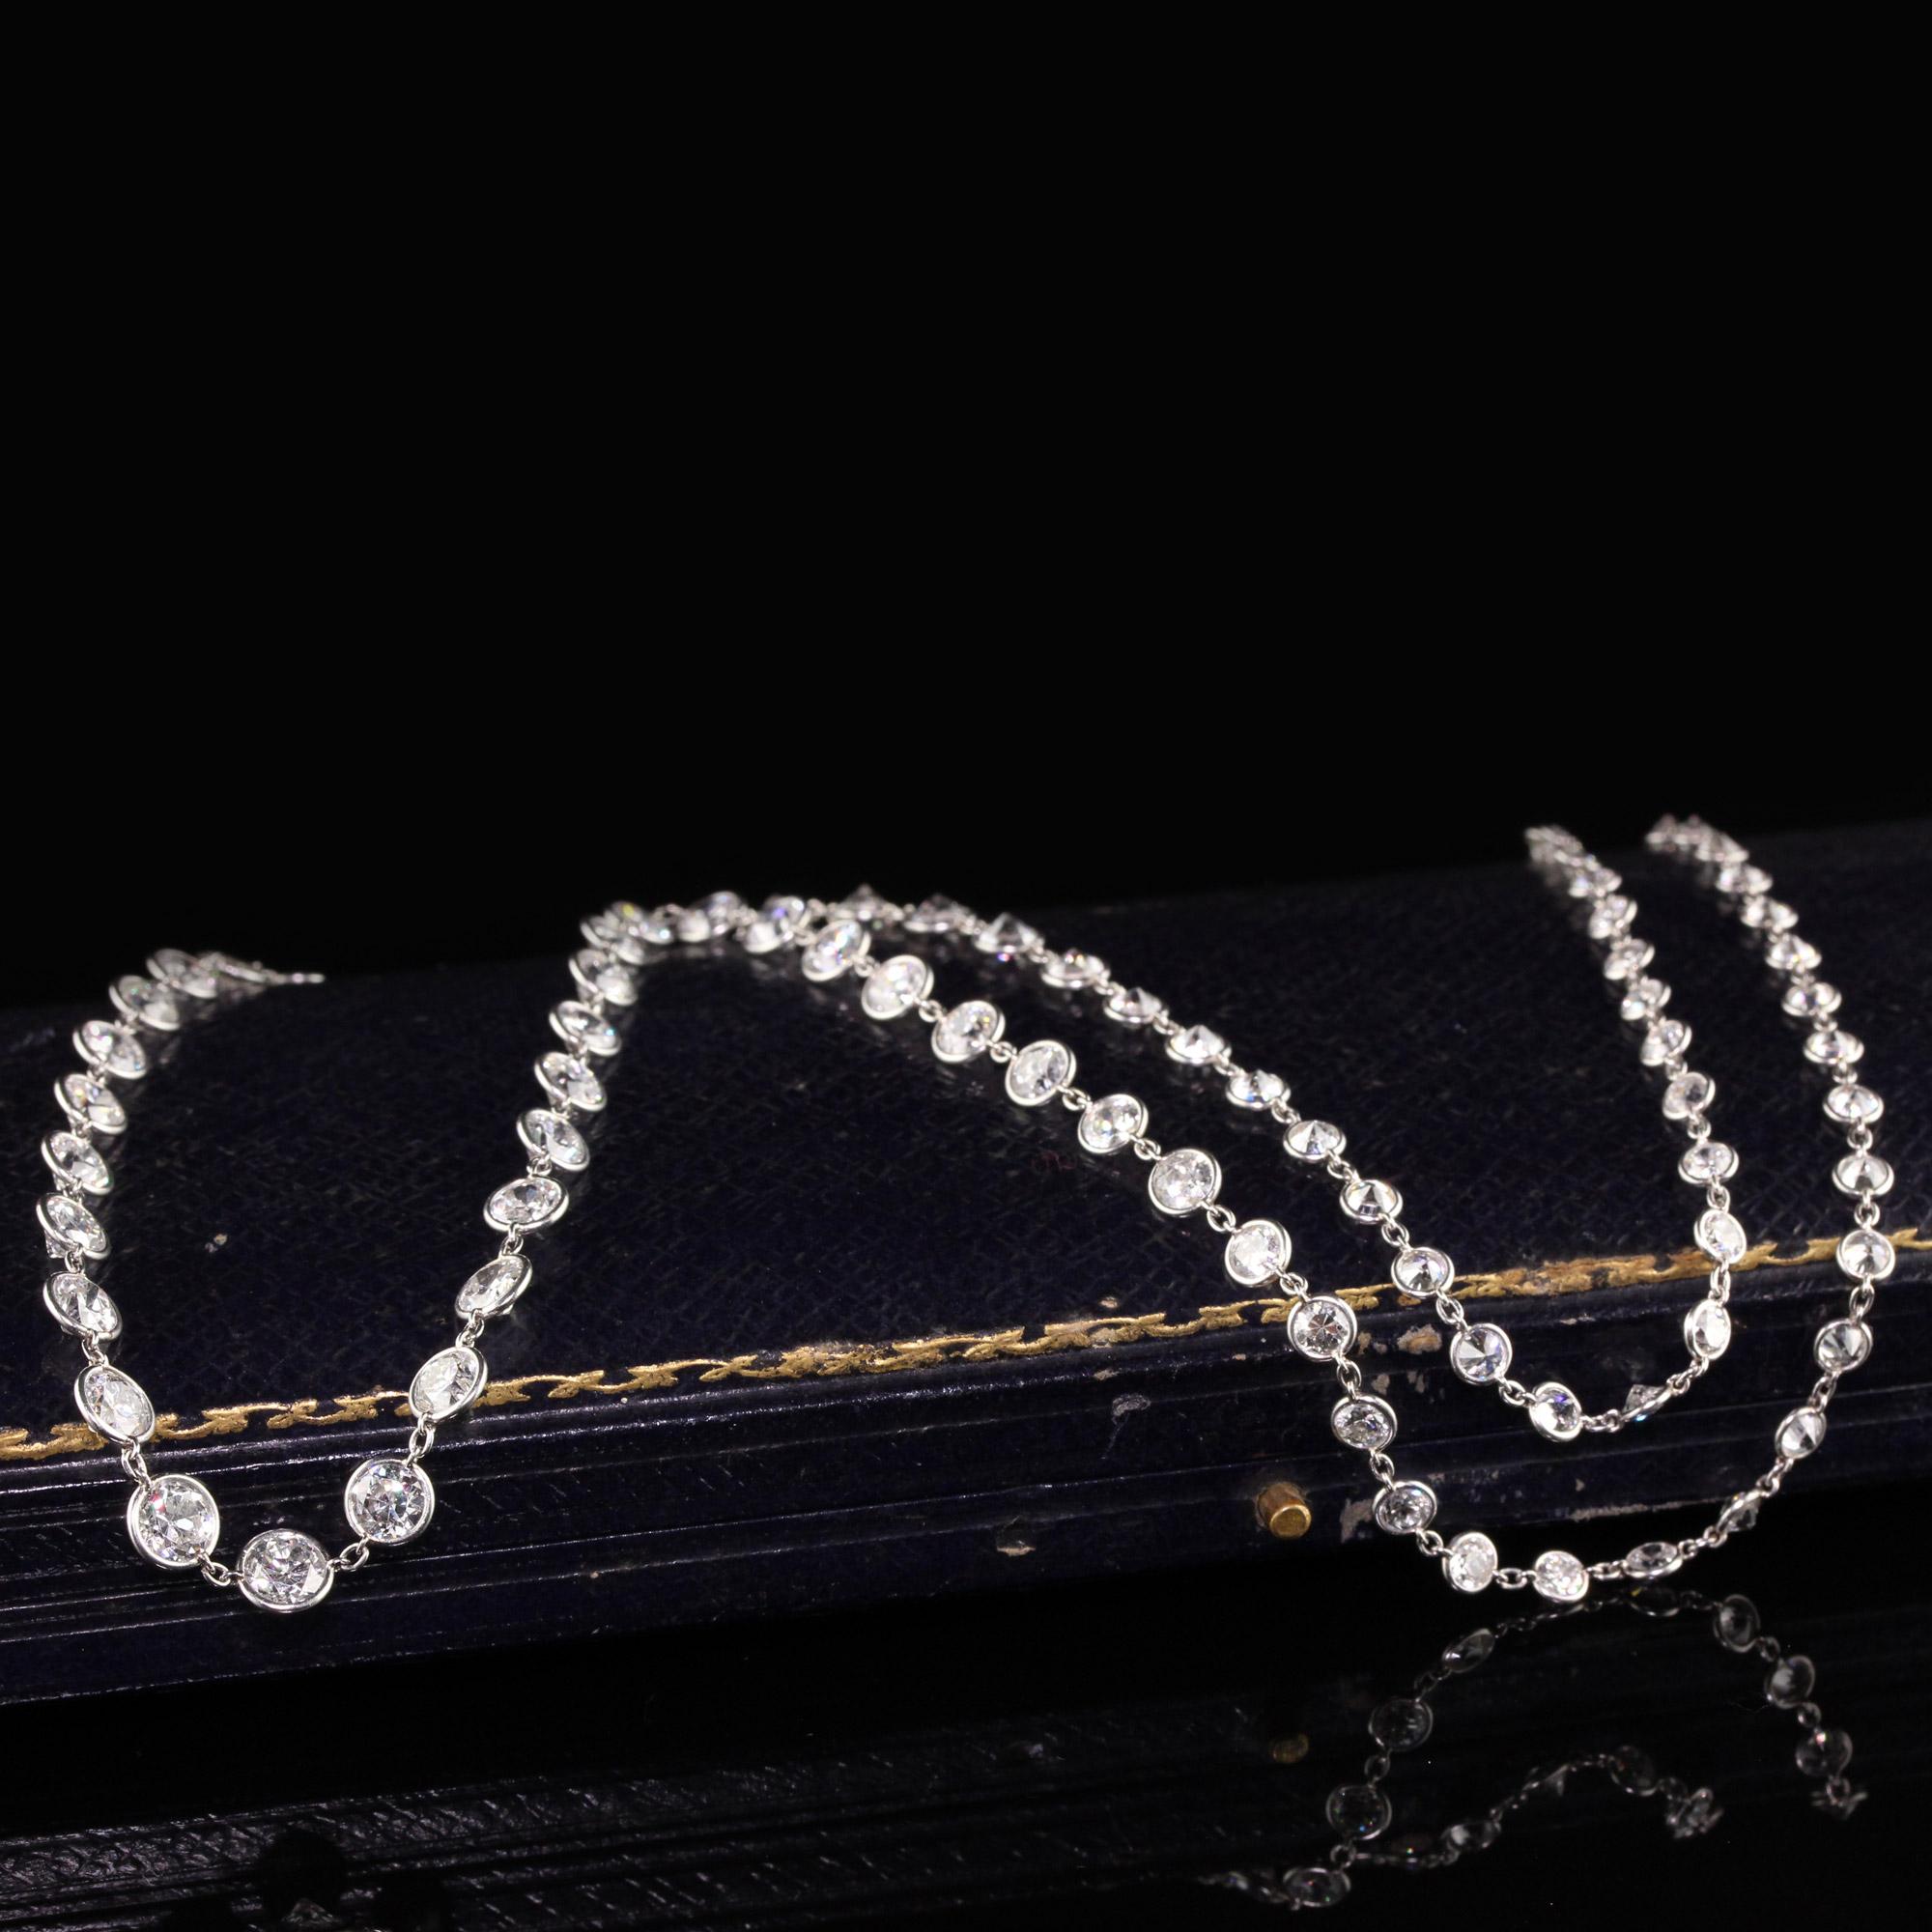 Wunderschöne antike Art Deco Platin abgestufte alte europäische Diamanten von der Yard-Halskette. Diese wunderschöne und atemberaubende Halskette besteht aus 24 Zoll abgestuften Diamanten mit altem europäischem Schliff. Die Diamanten beginnen bei